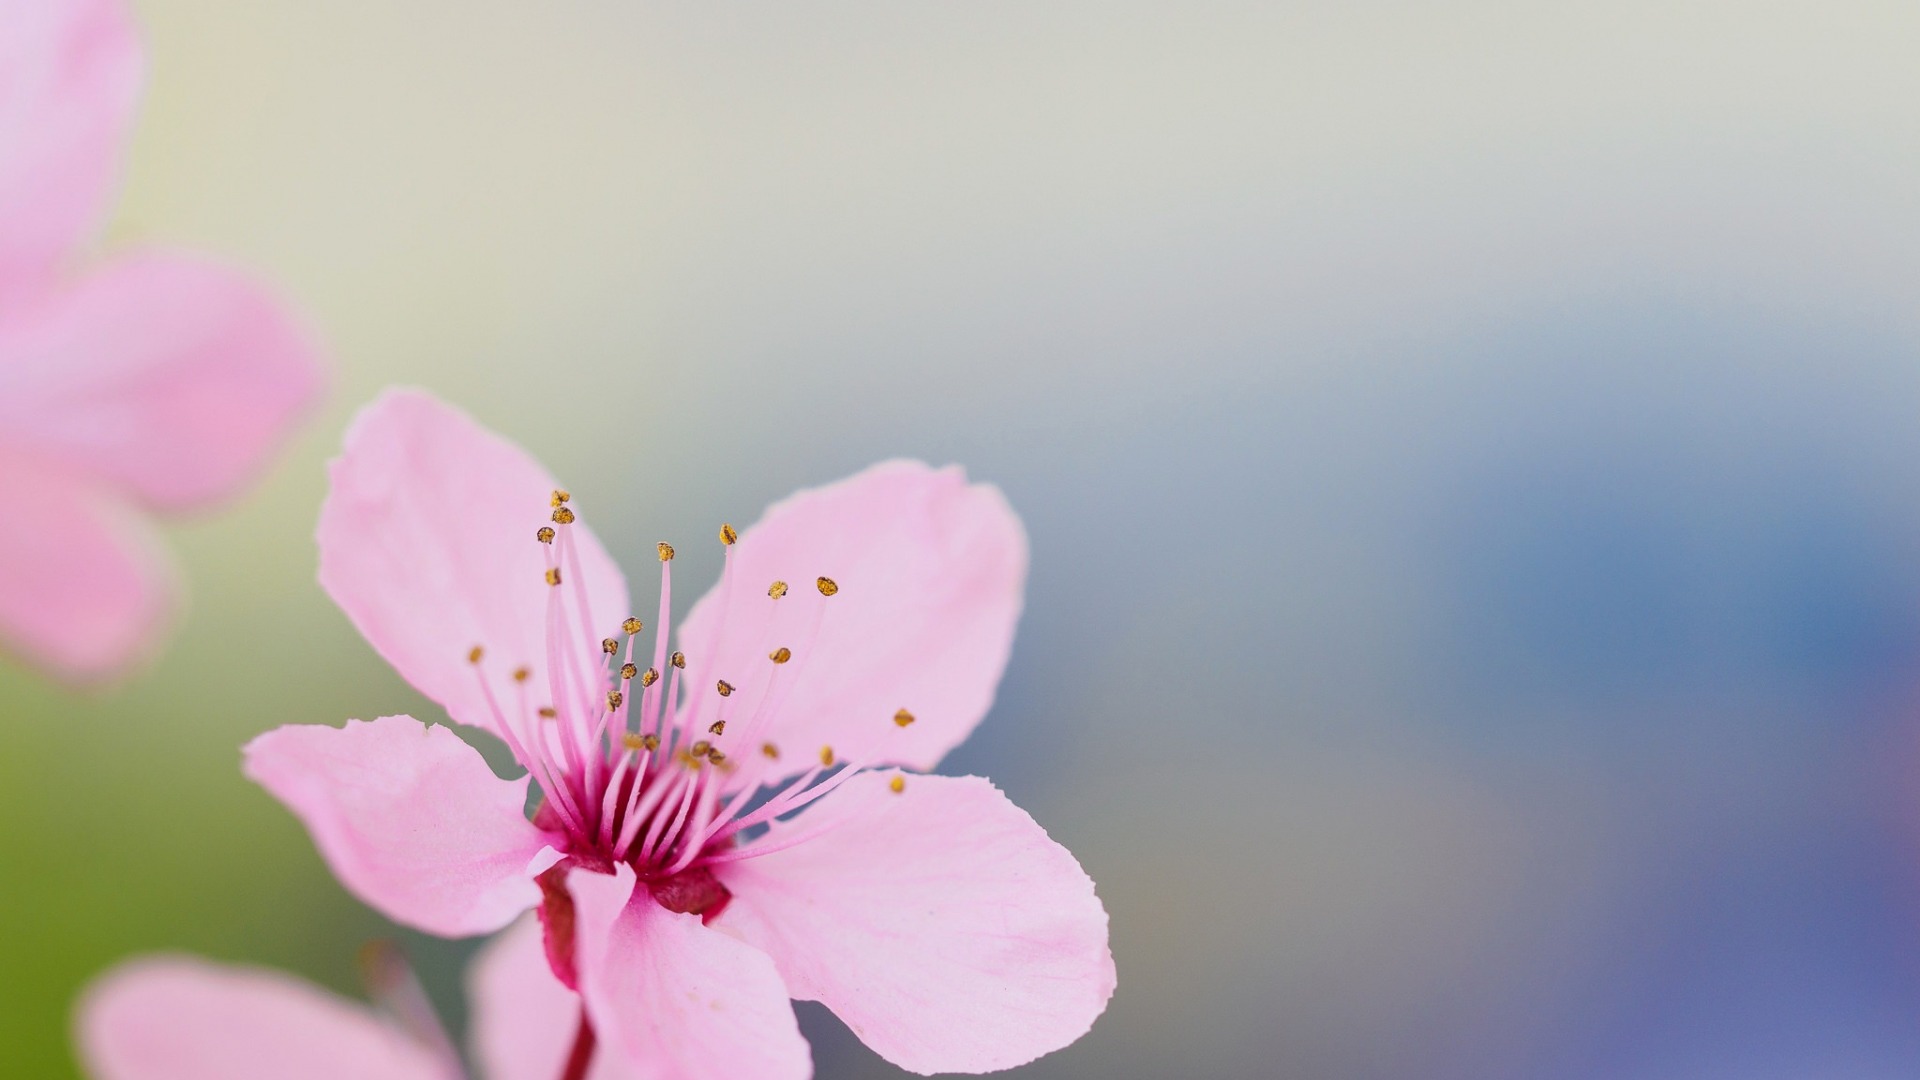 微距花卉摄影作品欣赏